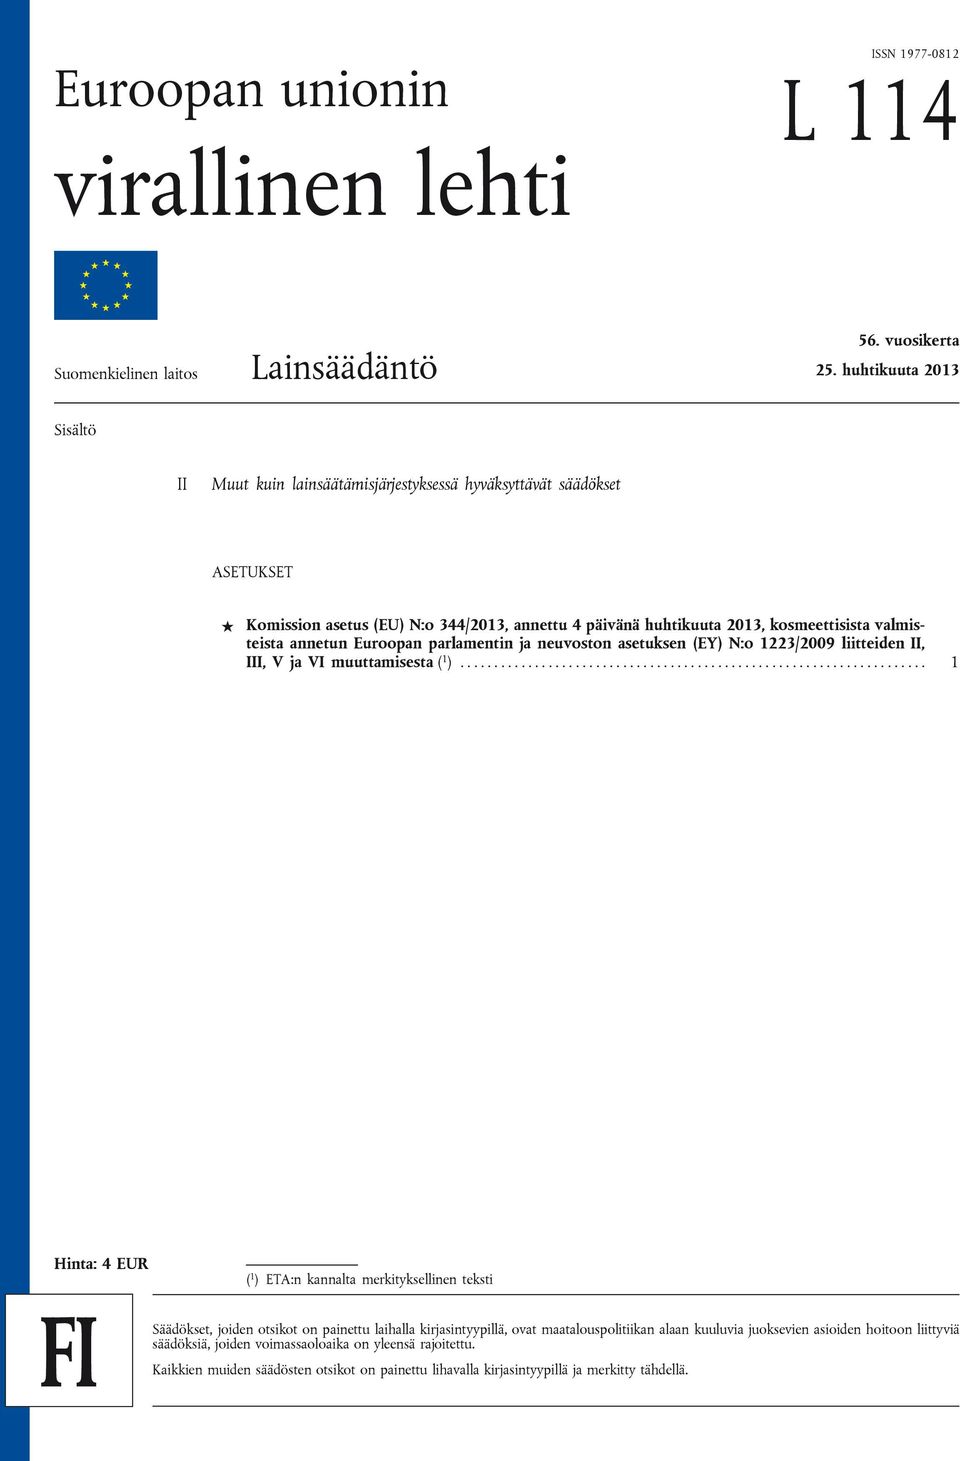 annetun Euroopan parlamentin ja neuvoston asetuksen (EY) N:o 1223/2009 liitteiden II, III, V ja VI muuttamisesta ( 1 ).